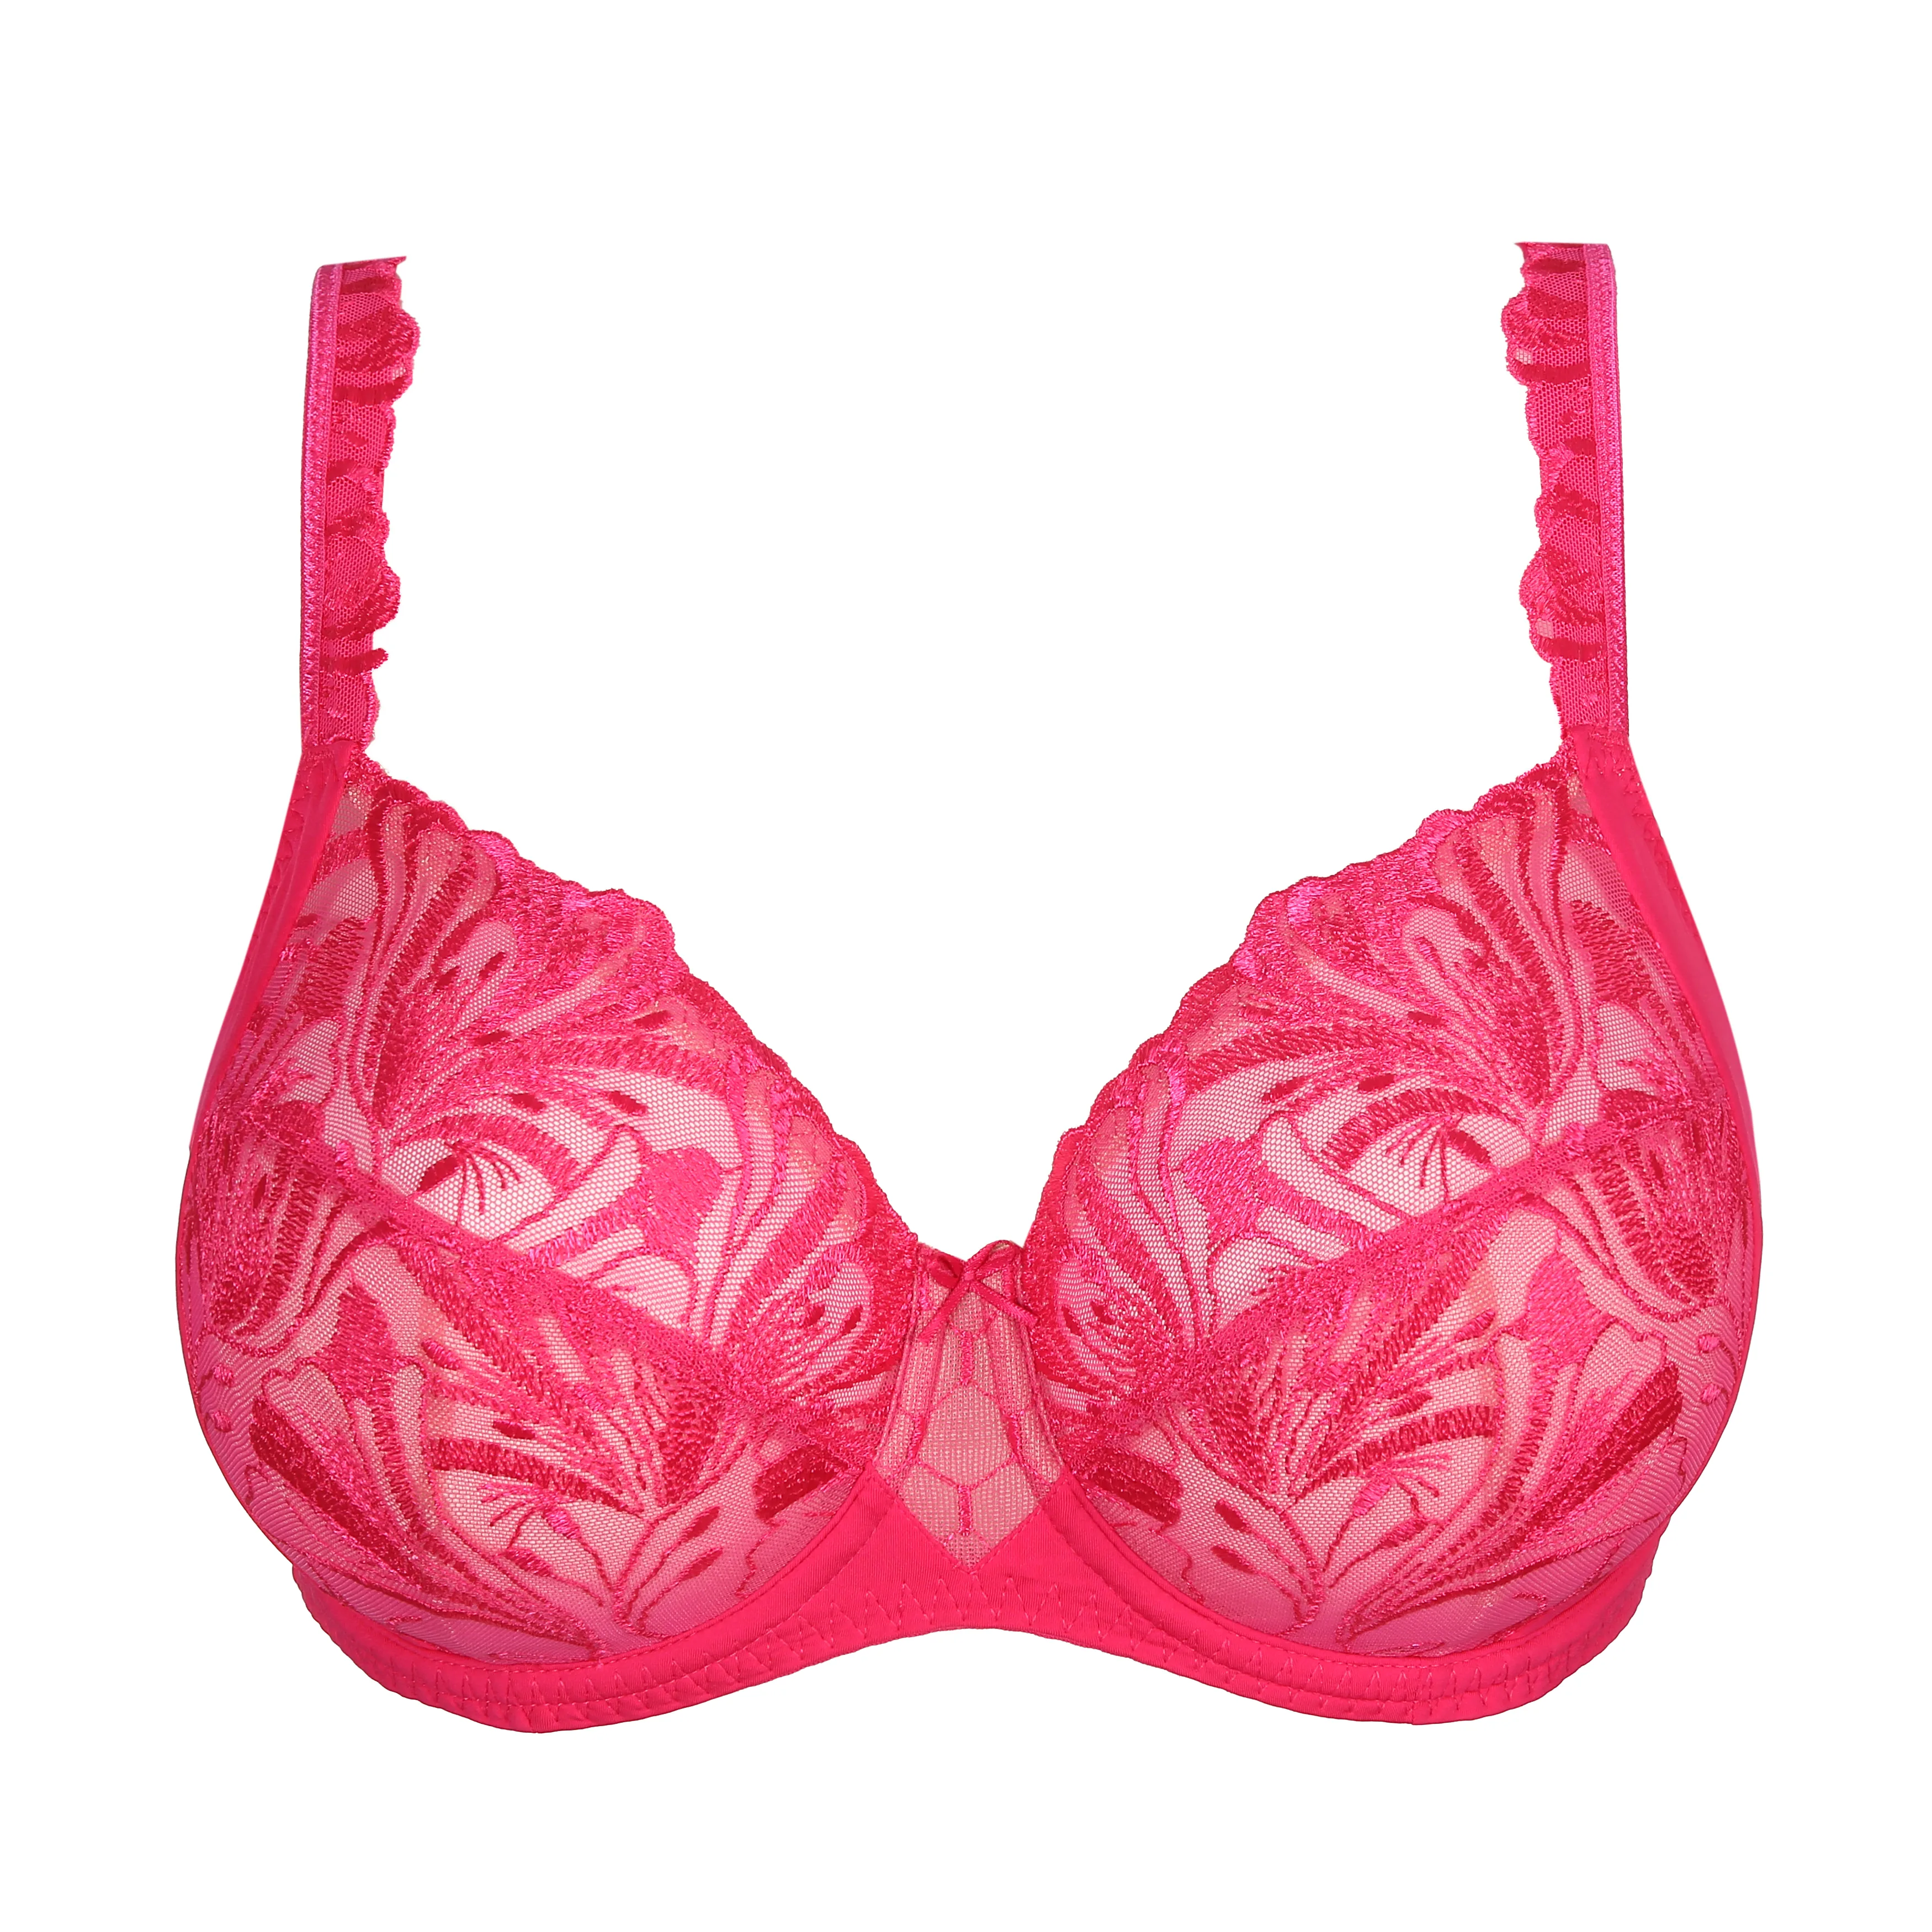 Women's Demi Daydream Push-Up Bra - Auden Rose Pink 36D 1 ct